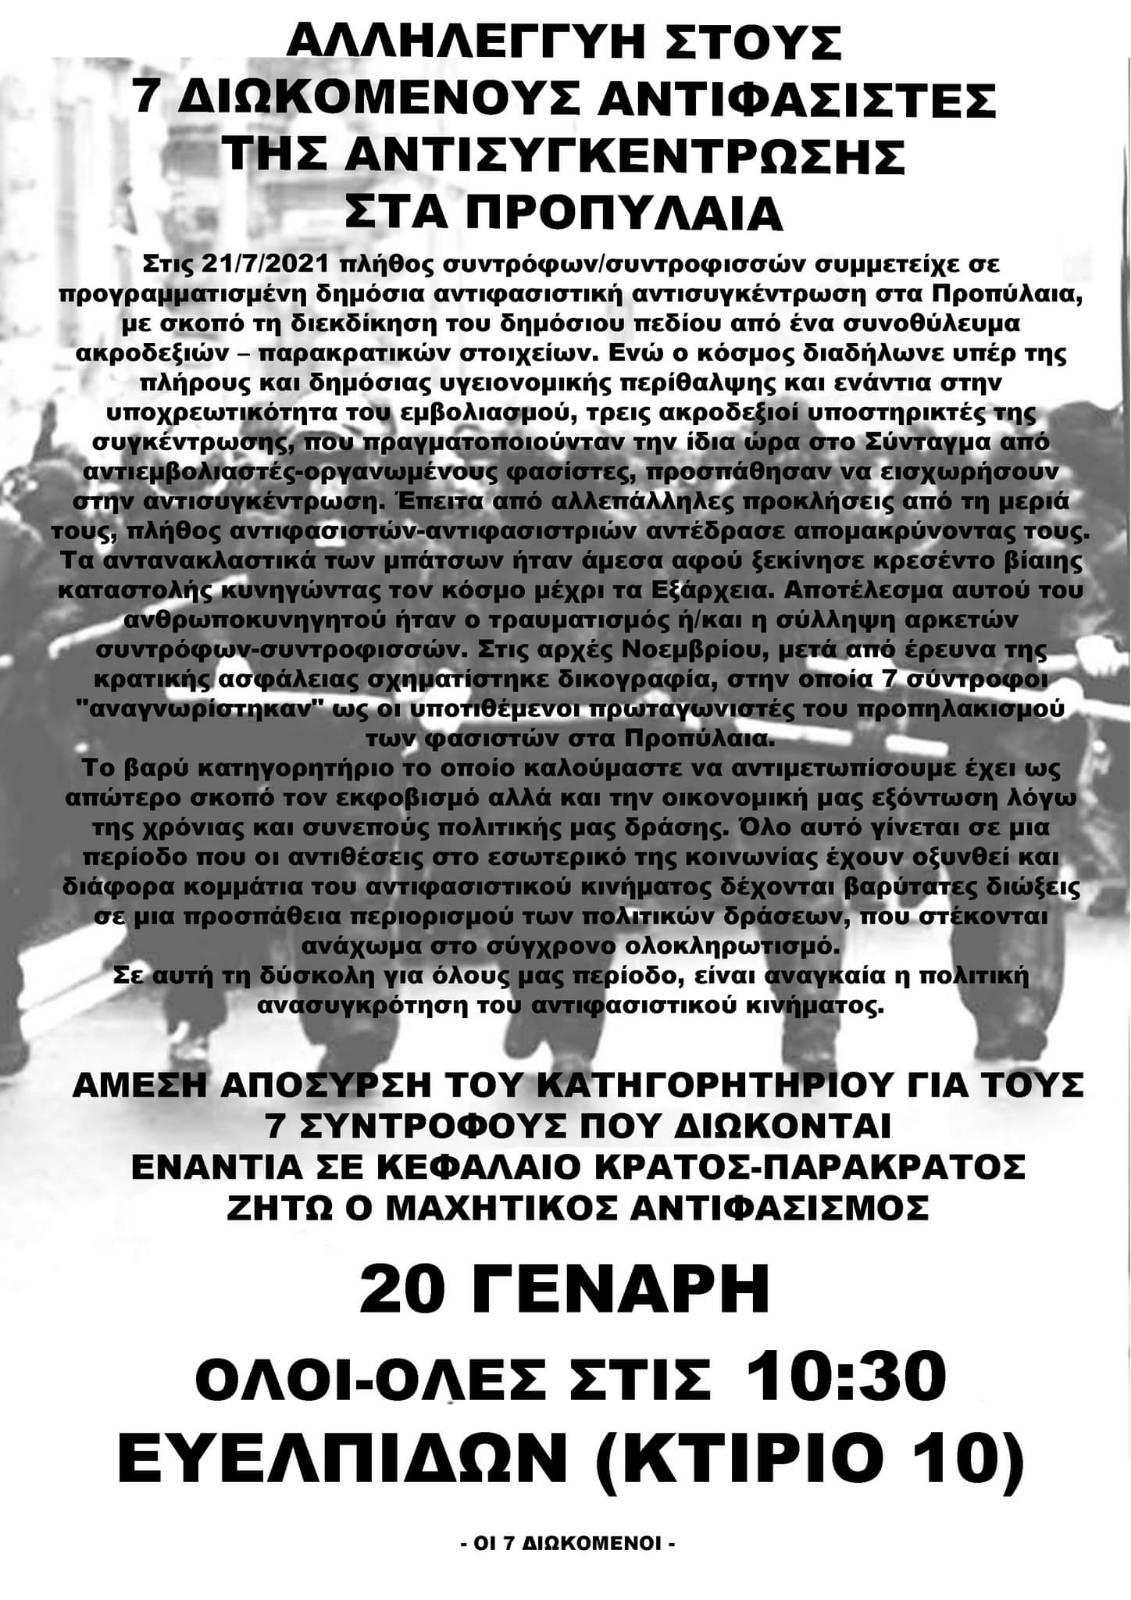 Αθήνα | Κάλεσμα στα δικαστήρια για τους 7 αντιφασίστες της αντισυγκέντρωσης στις 21/7/21 (Ευελπίδων, 20/1 στις 10:30)